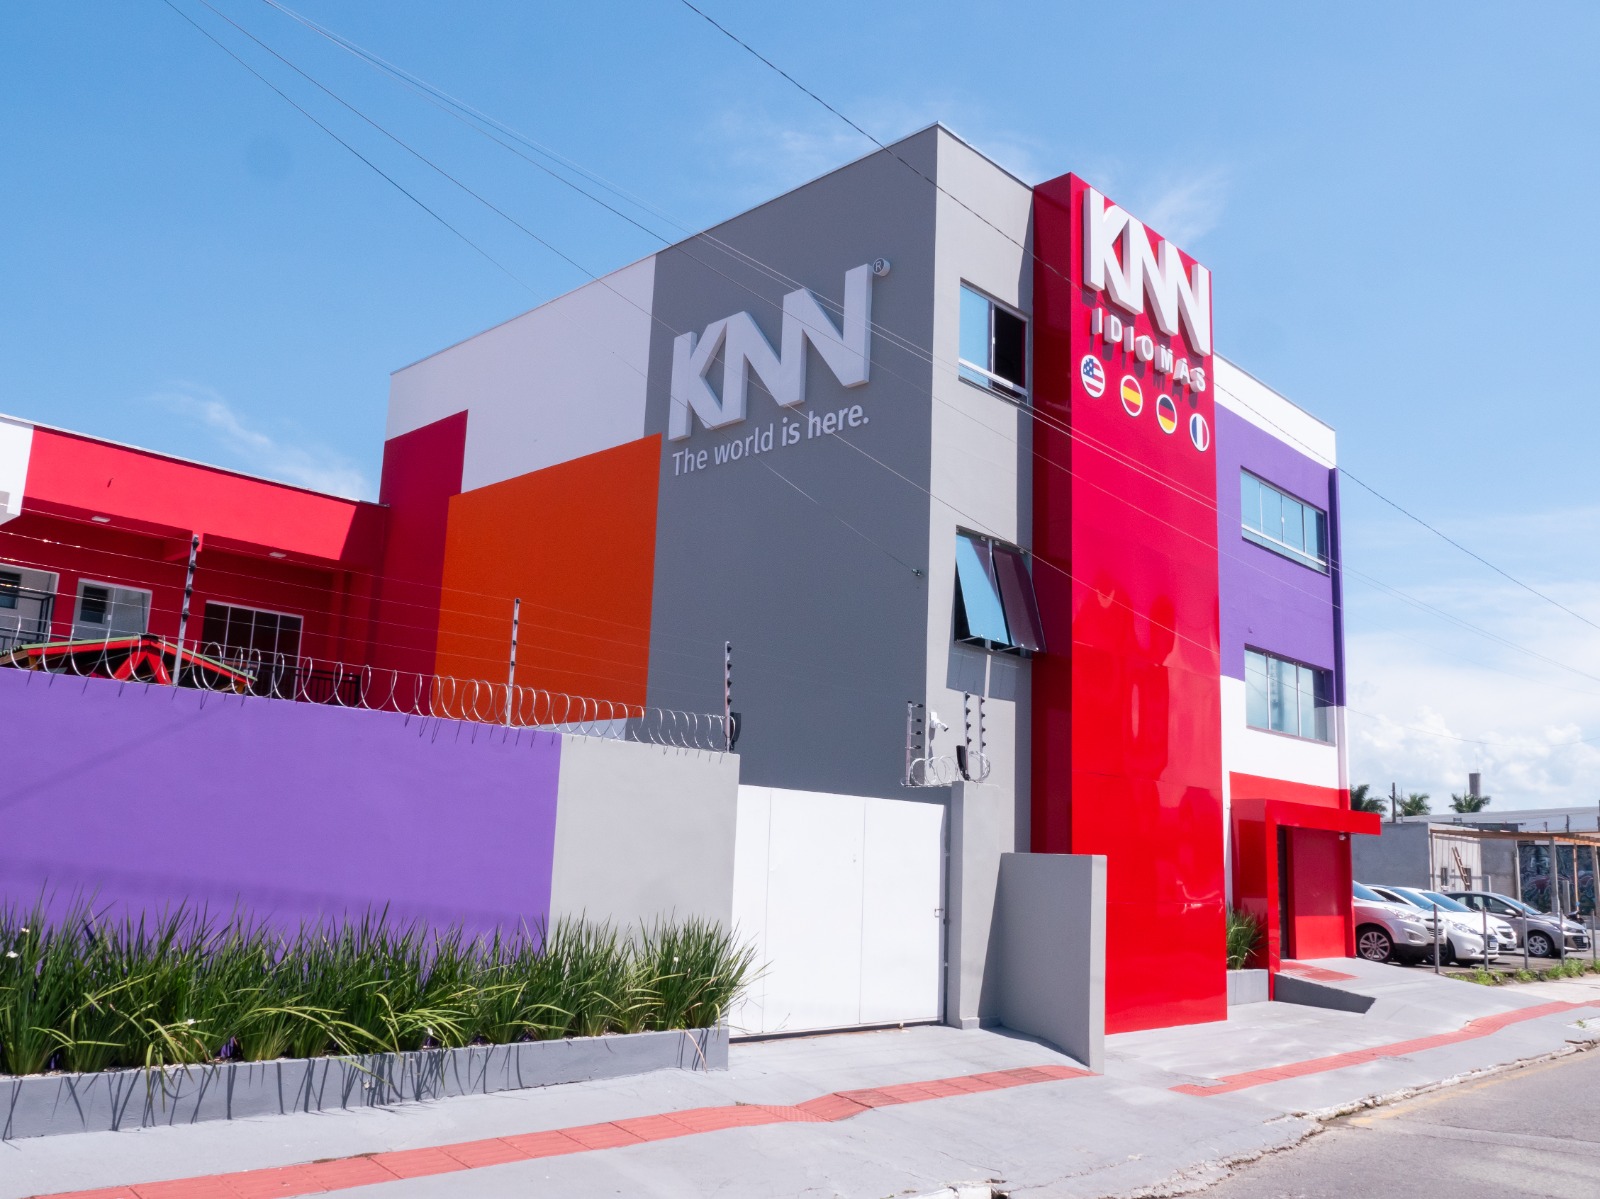 KNN Idiomas investe no pequeno empreendedor e financia R$ 7 milhões para expansão em cidades com até 50 mil habitantes